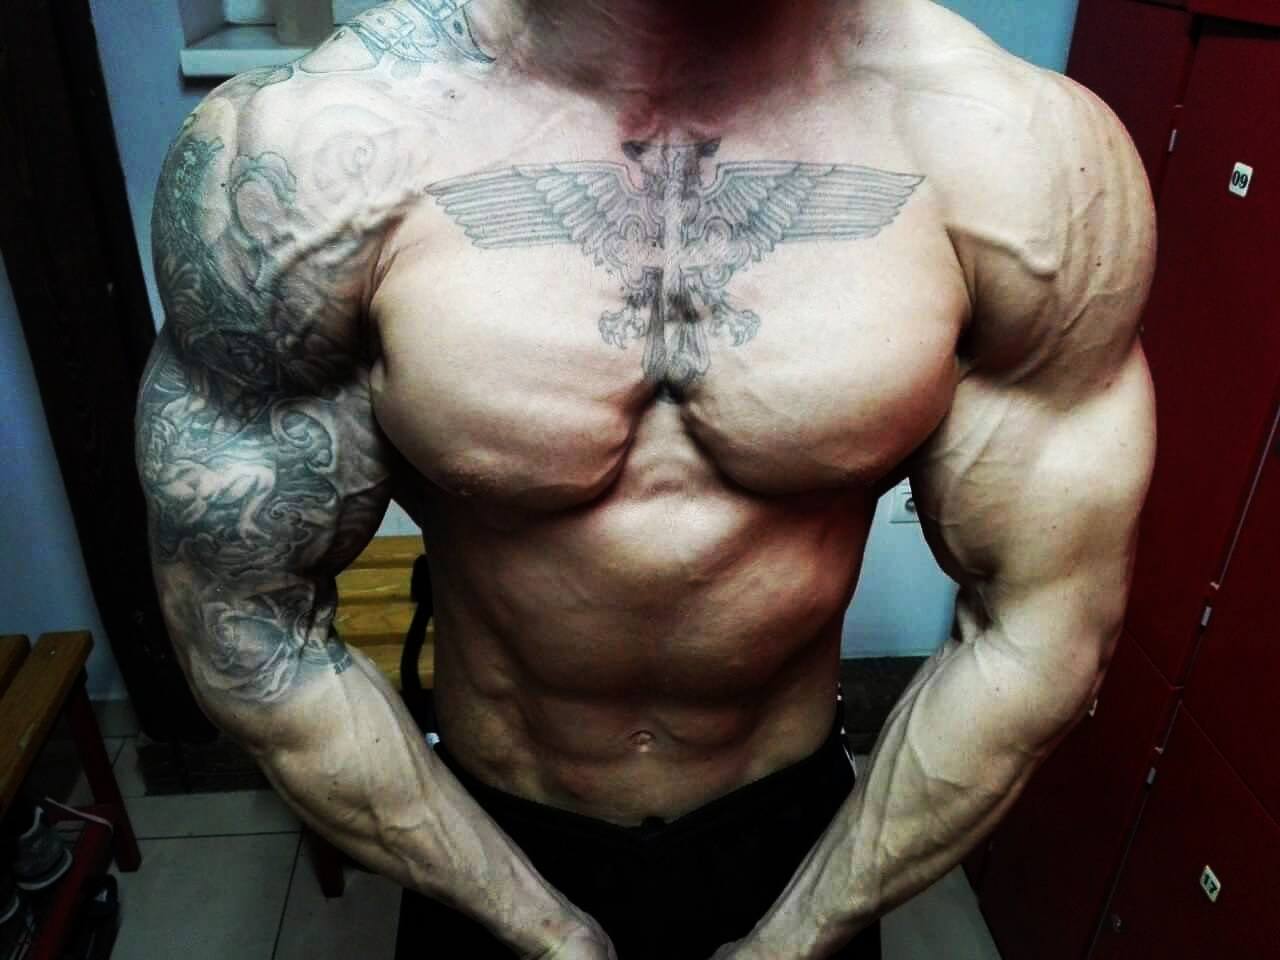 serbian-muscle-men:  Serbian bodybuilder Milan